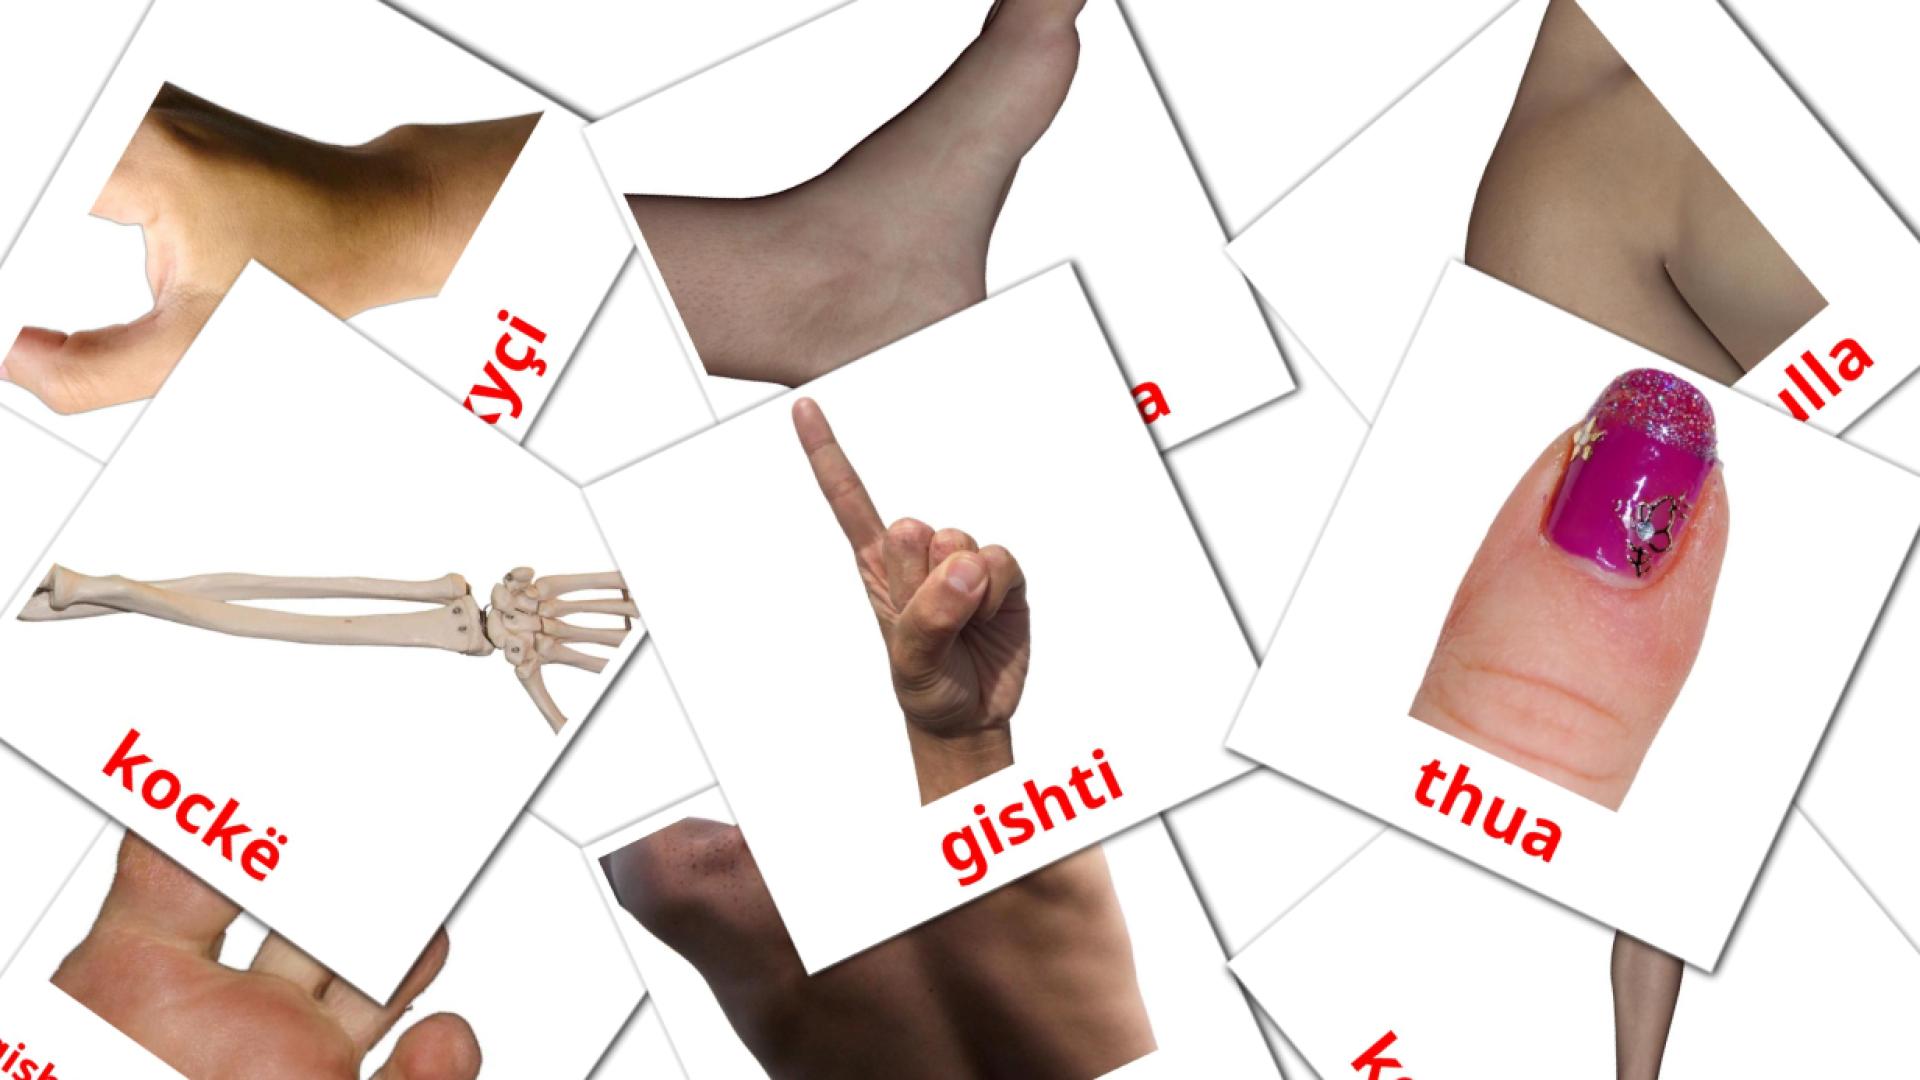 Partes do Corpo - Cartões de vocabulário albanês